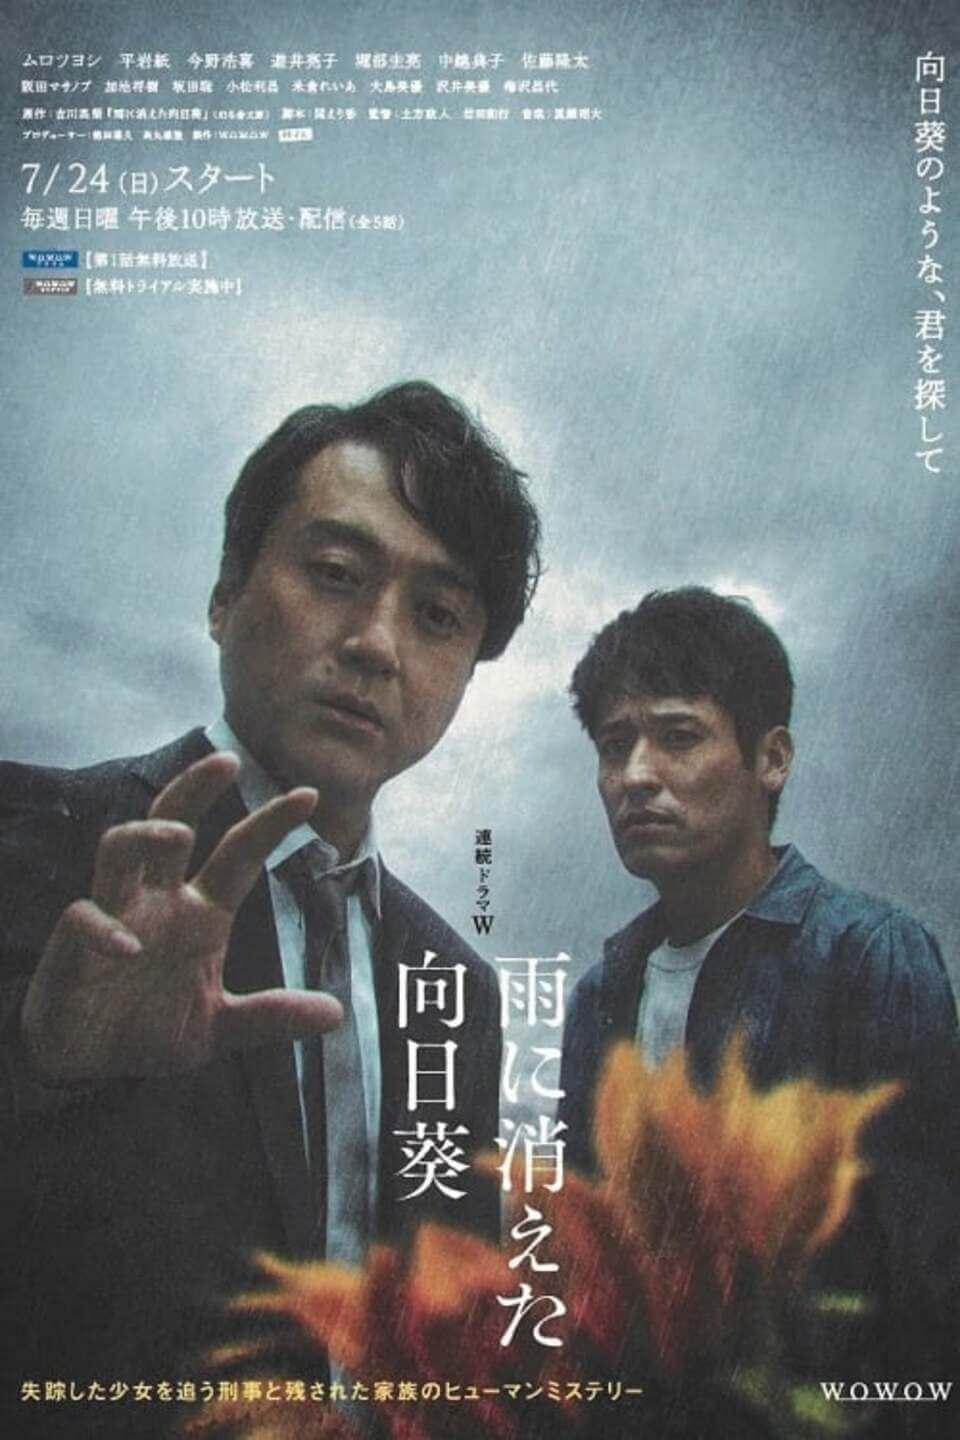 TV ratings for Ame Ni Kieta Himawari (雨に消えた向日葵) in Chile. Netflix TV series